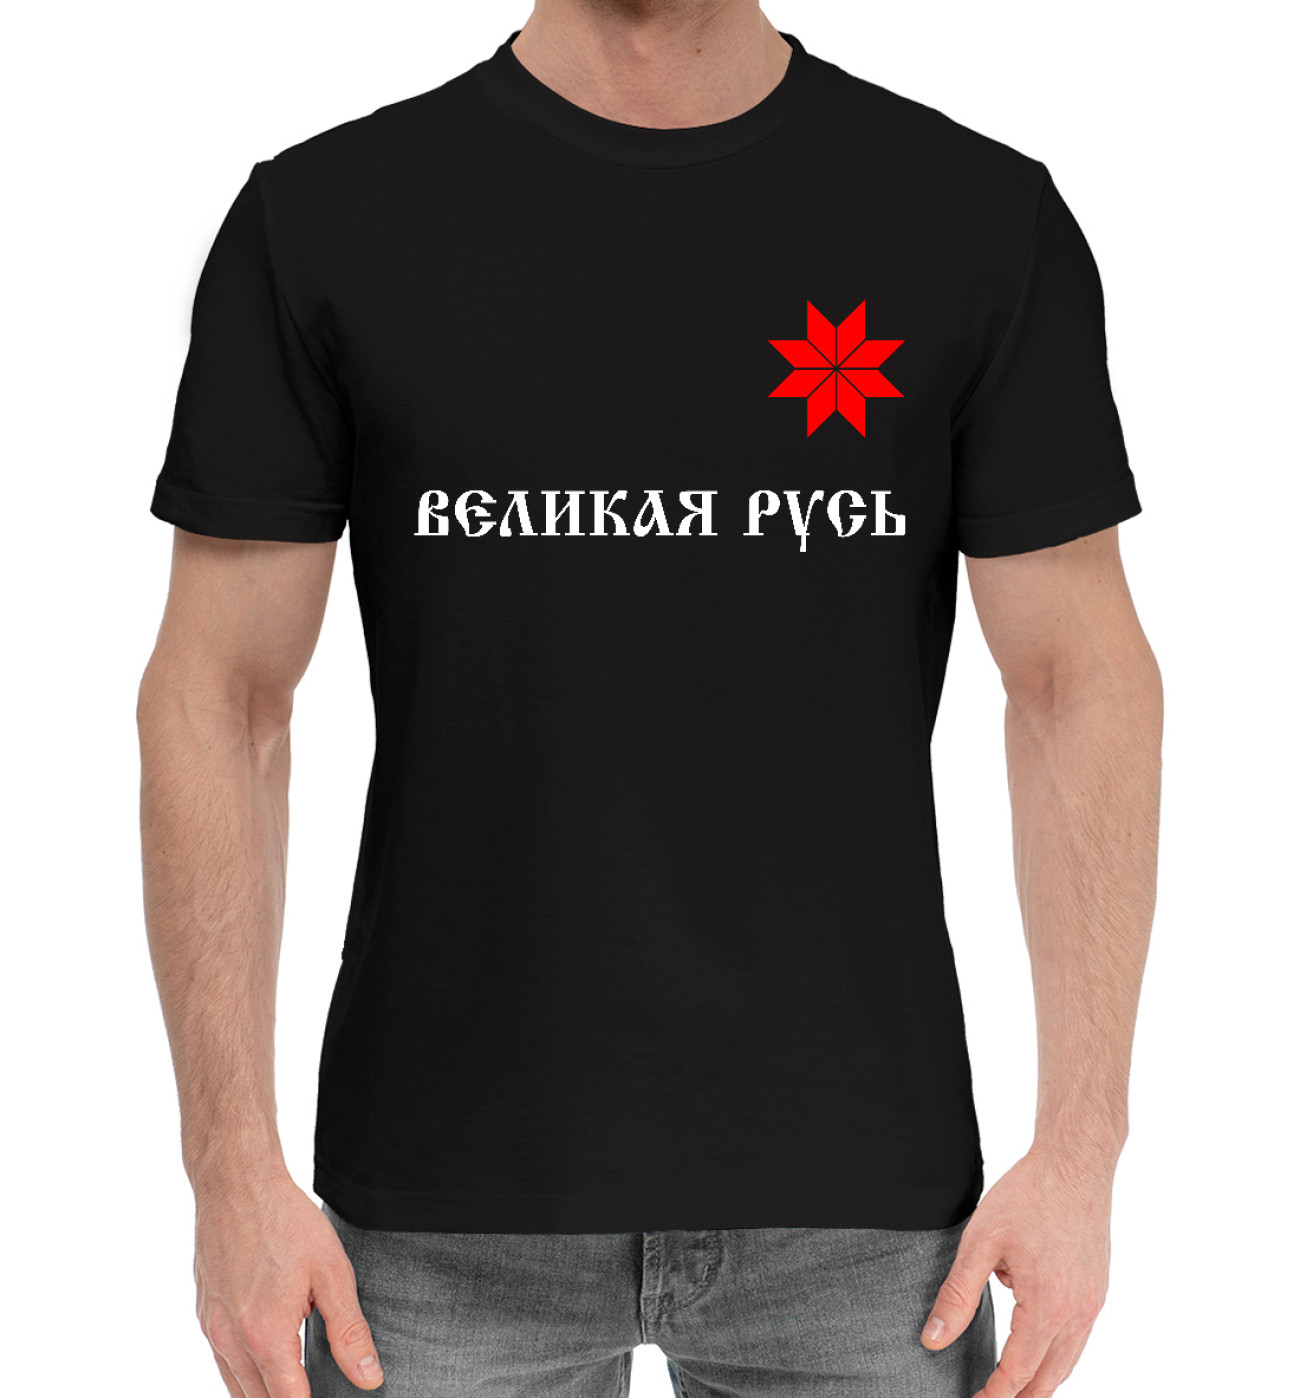 Мужская Хлопковая футболка Великая Русь - Алатырь, артикул: SSM-249646-hfu-2